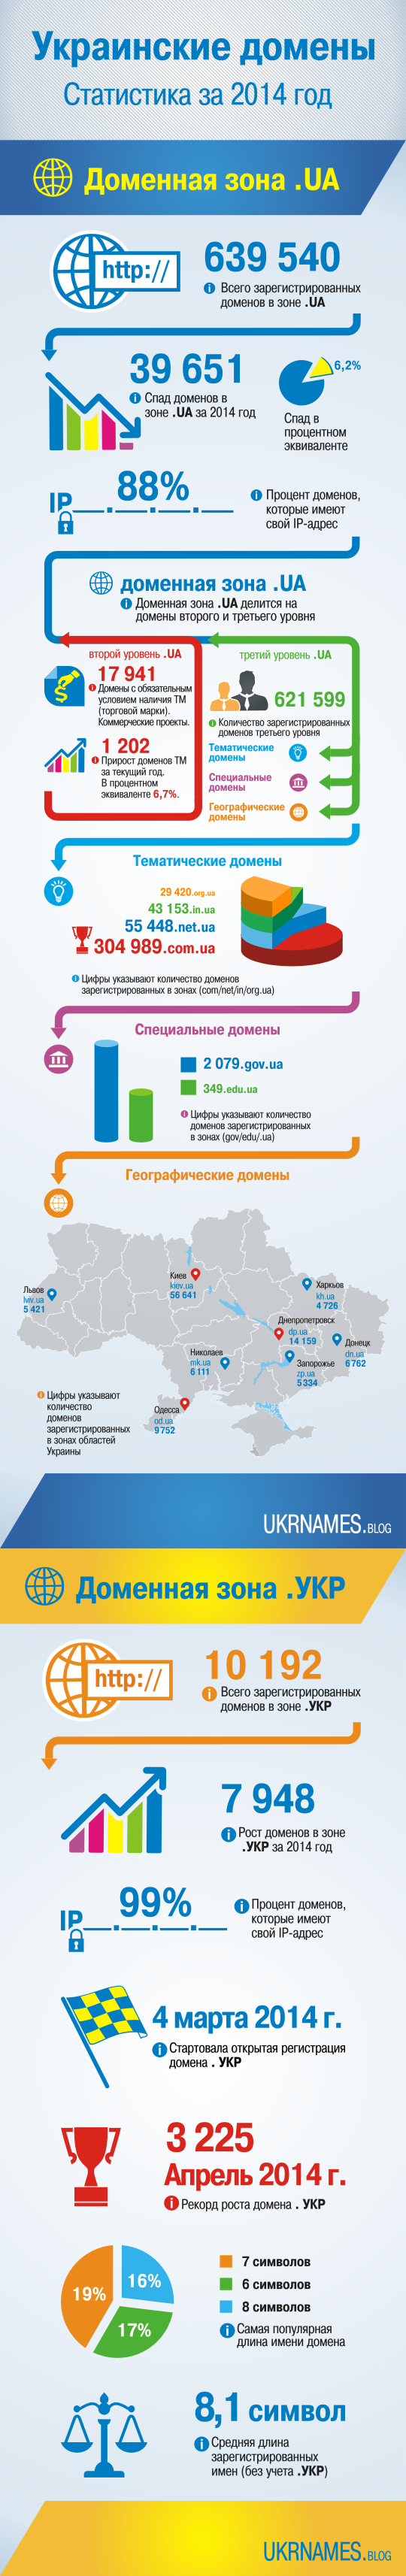 infographics_ukr_ua